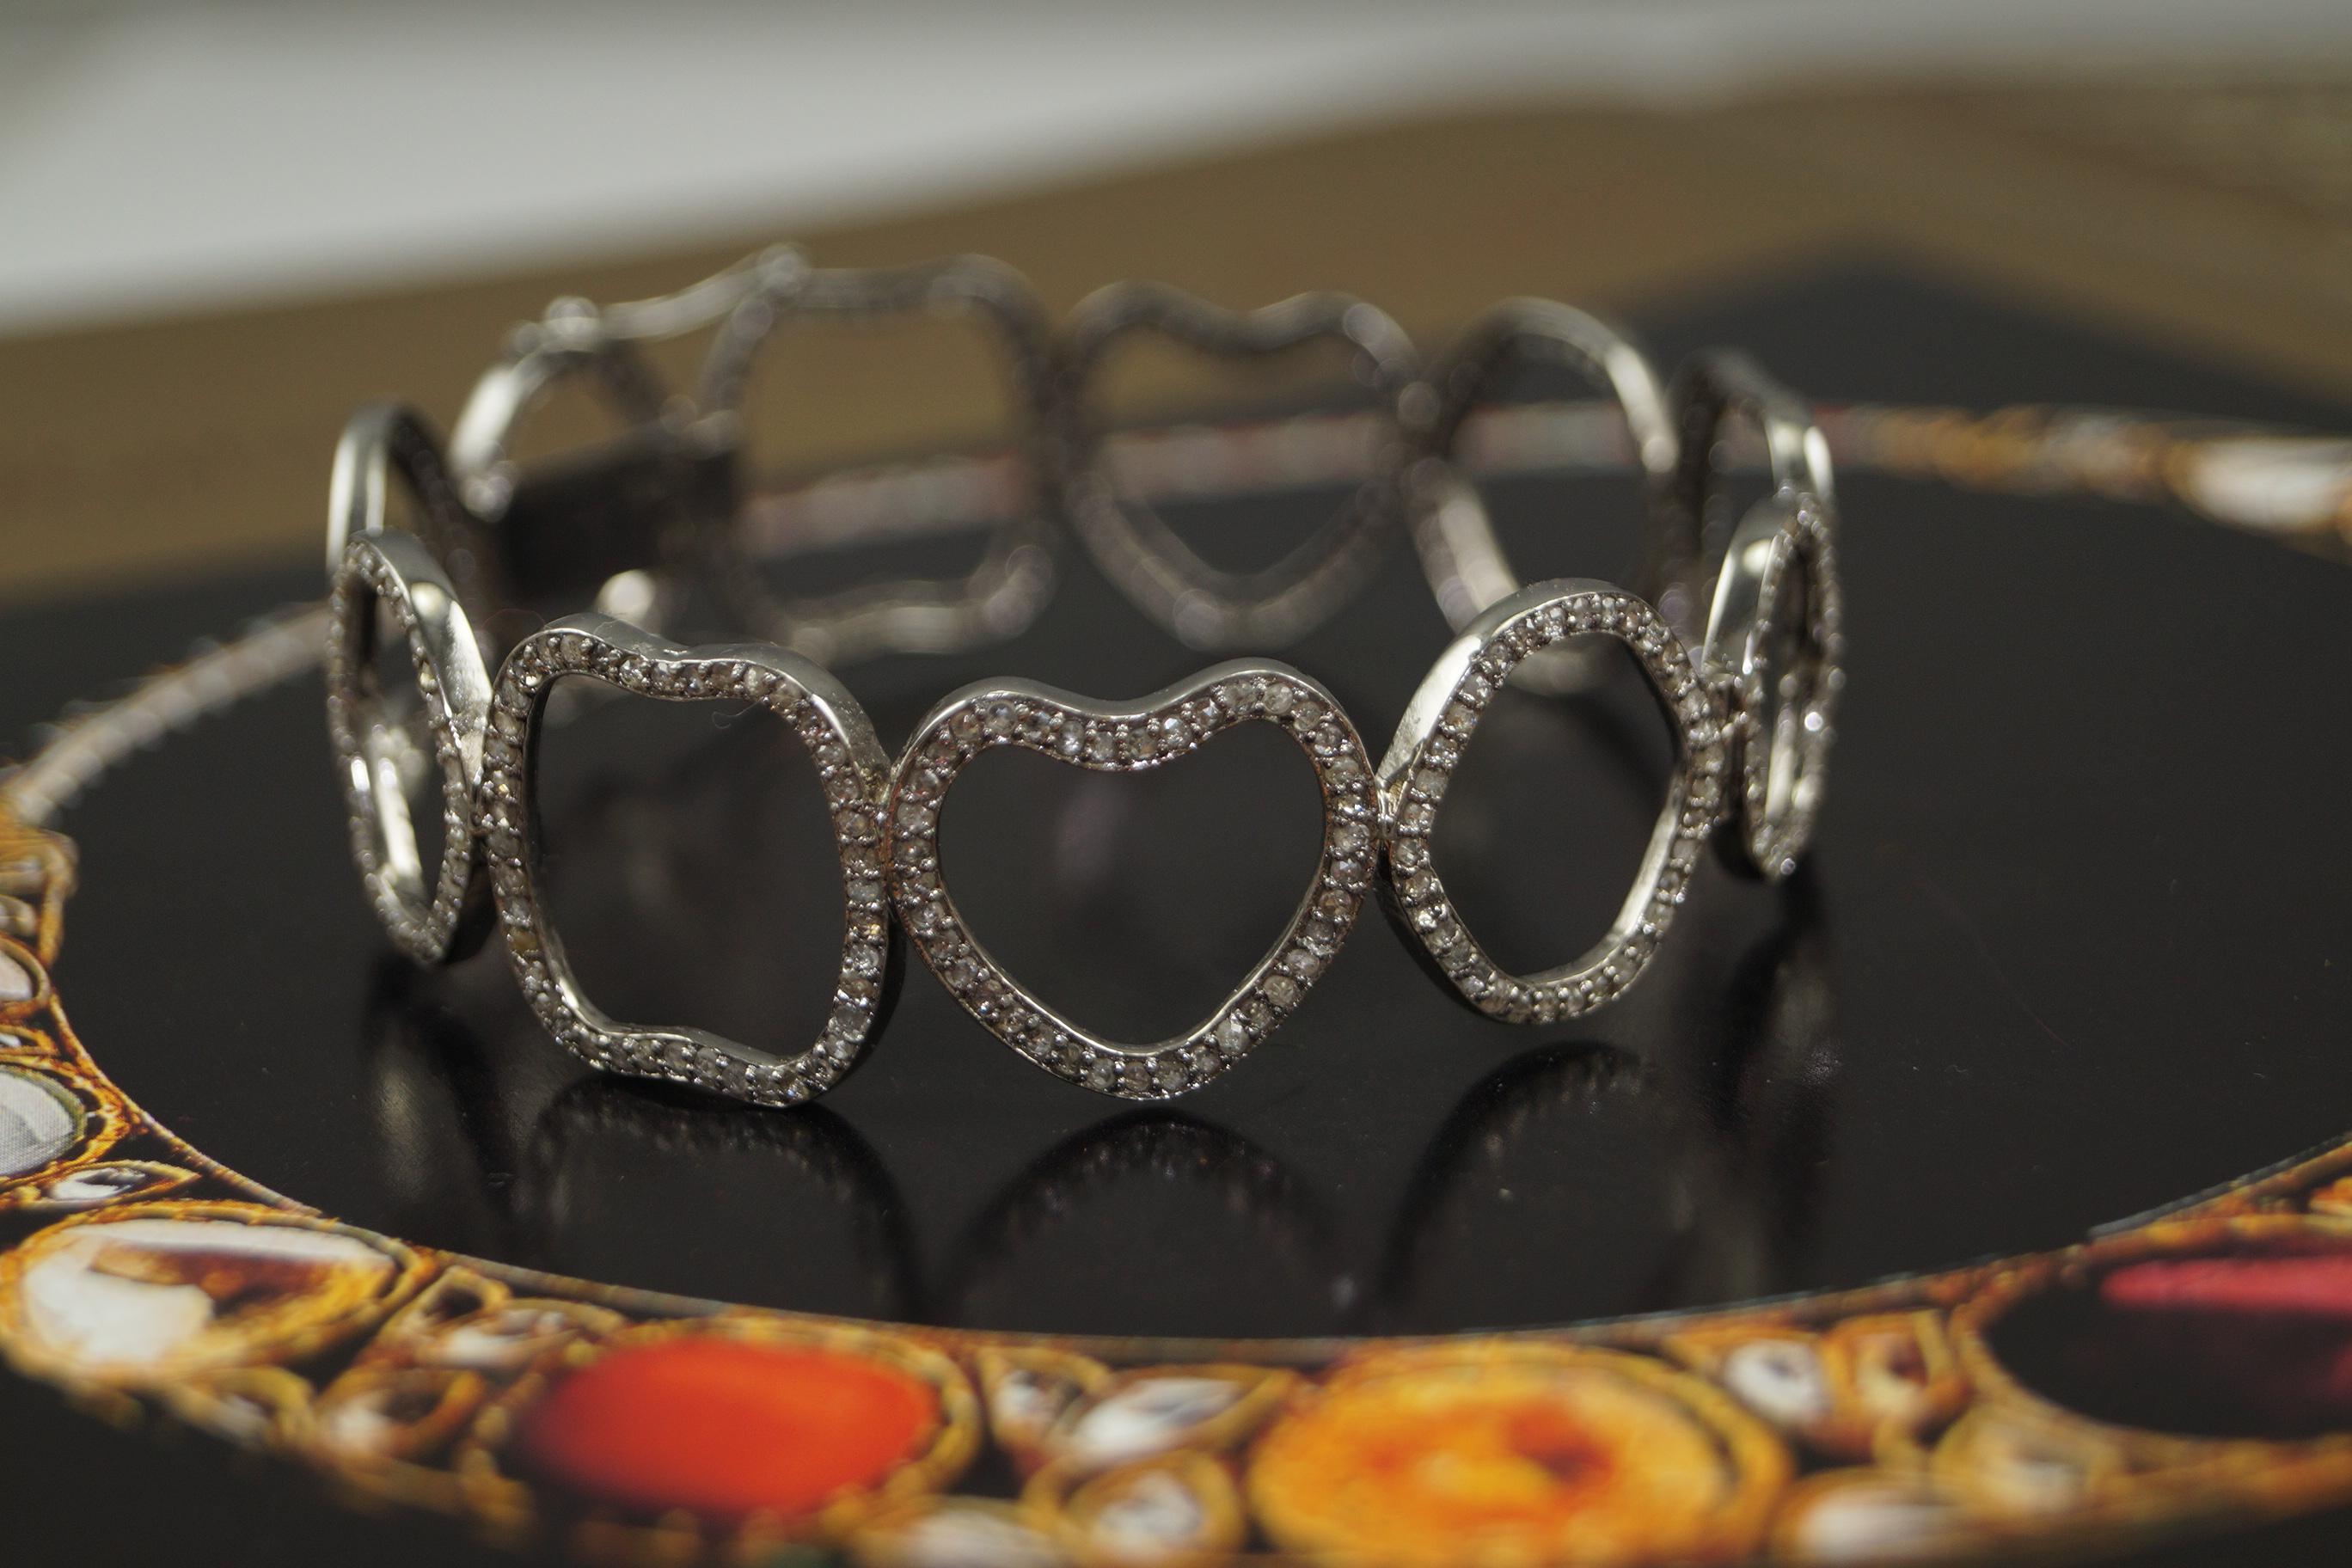 Cet élégant bracelet à charnière se compose de :

Diamant - 3,50cts
Type de diamant : Diamants pavés
Couleur du diamant : Whiting 
Certificat de diamant - certifié naturel
Métal : Argent
Pureté du métal : Argent Sterling ou 92,5 % pur